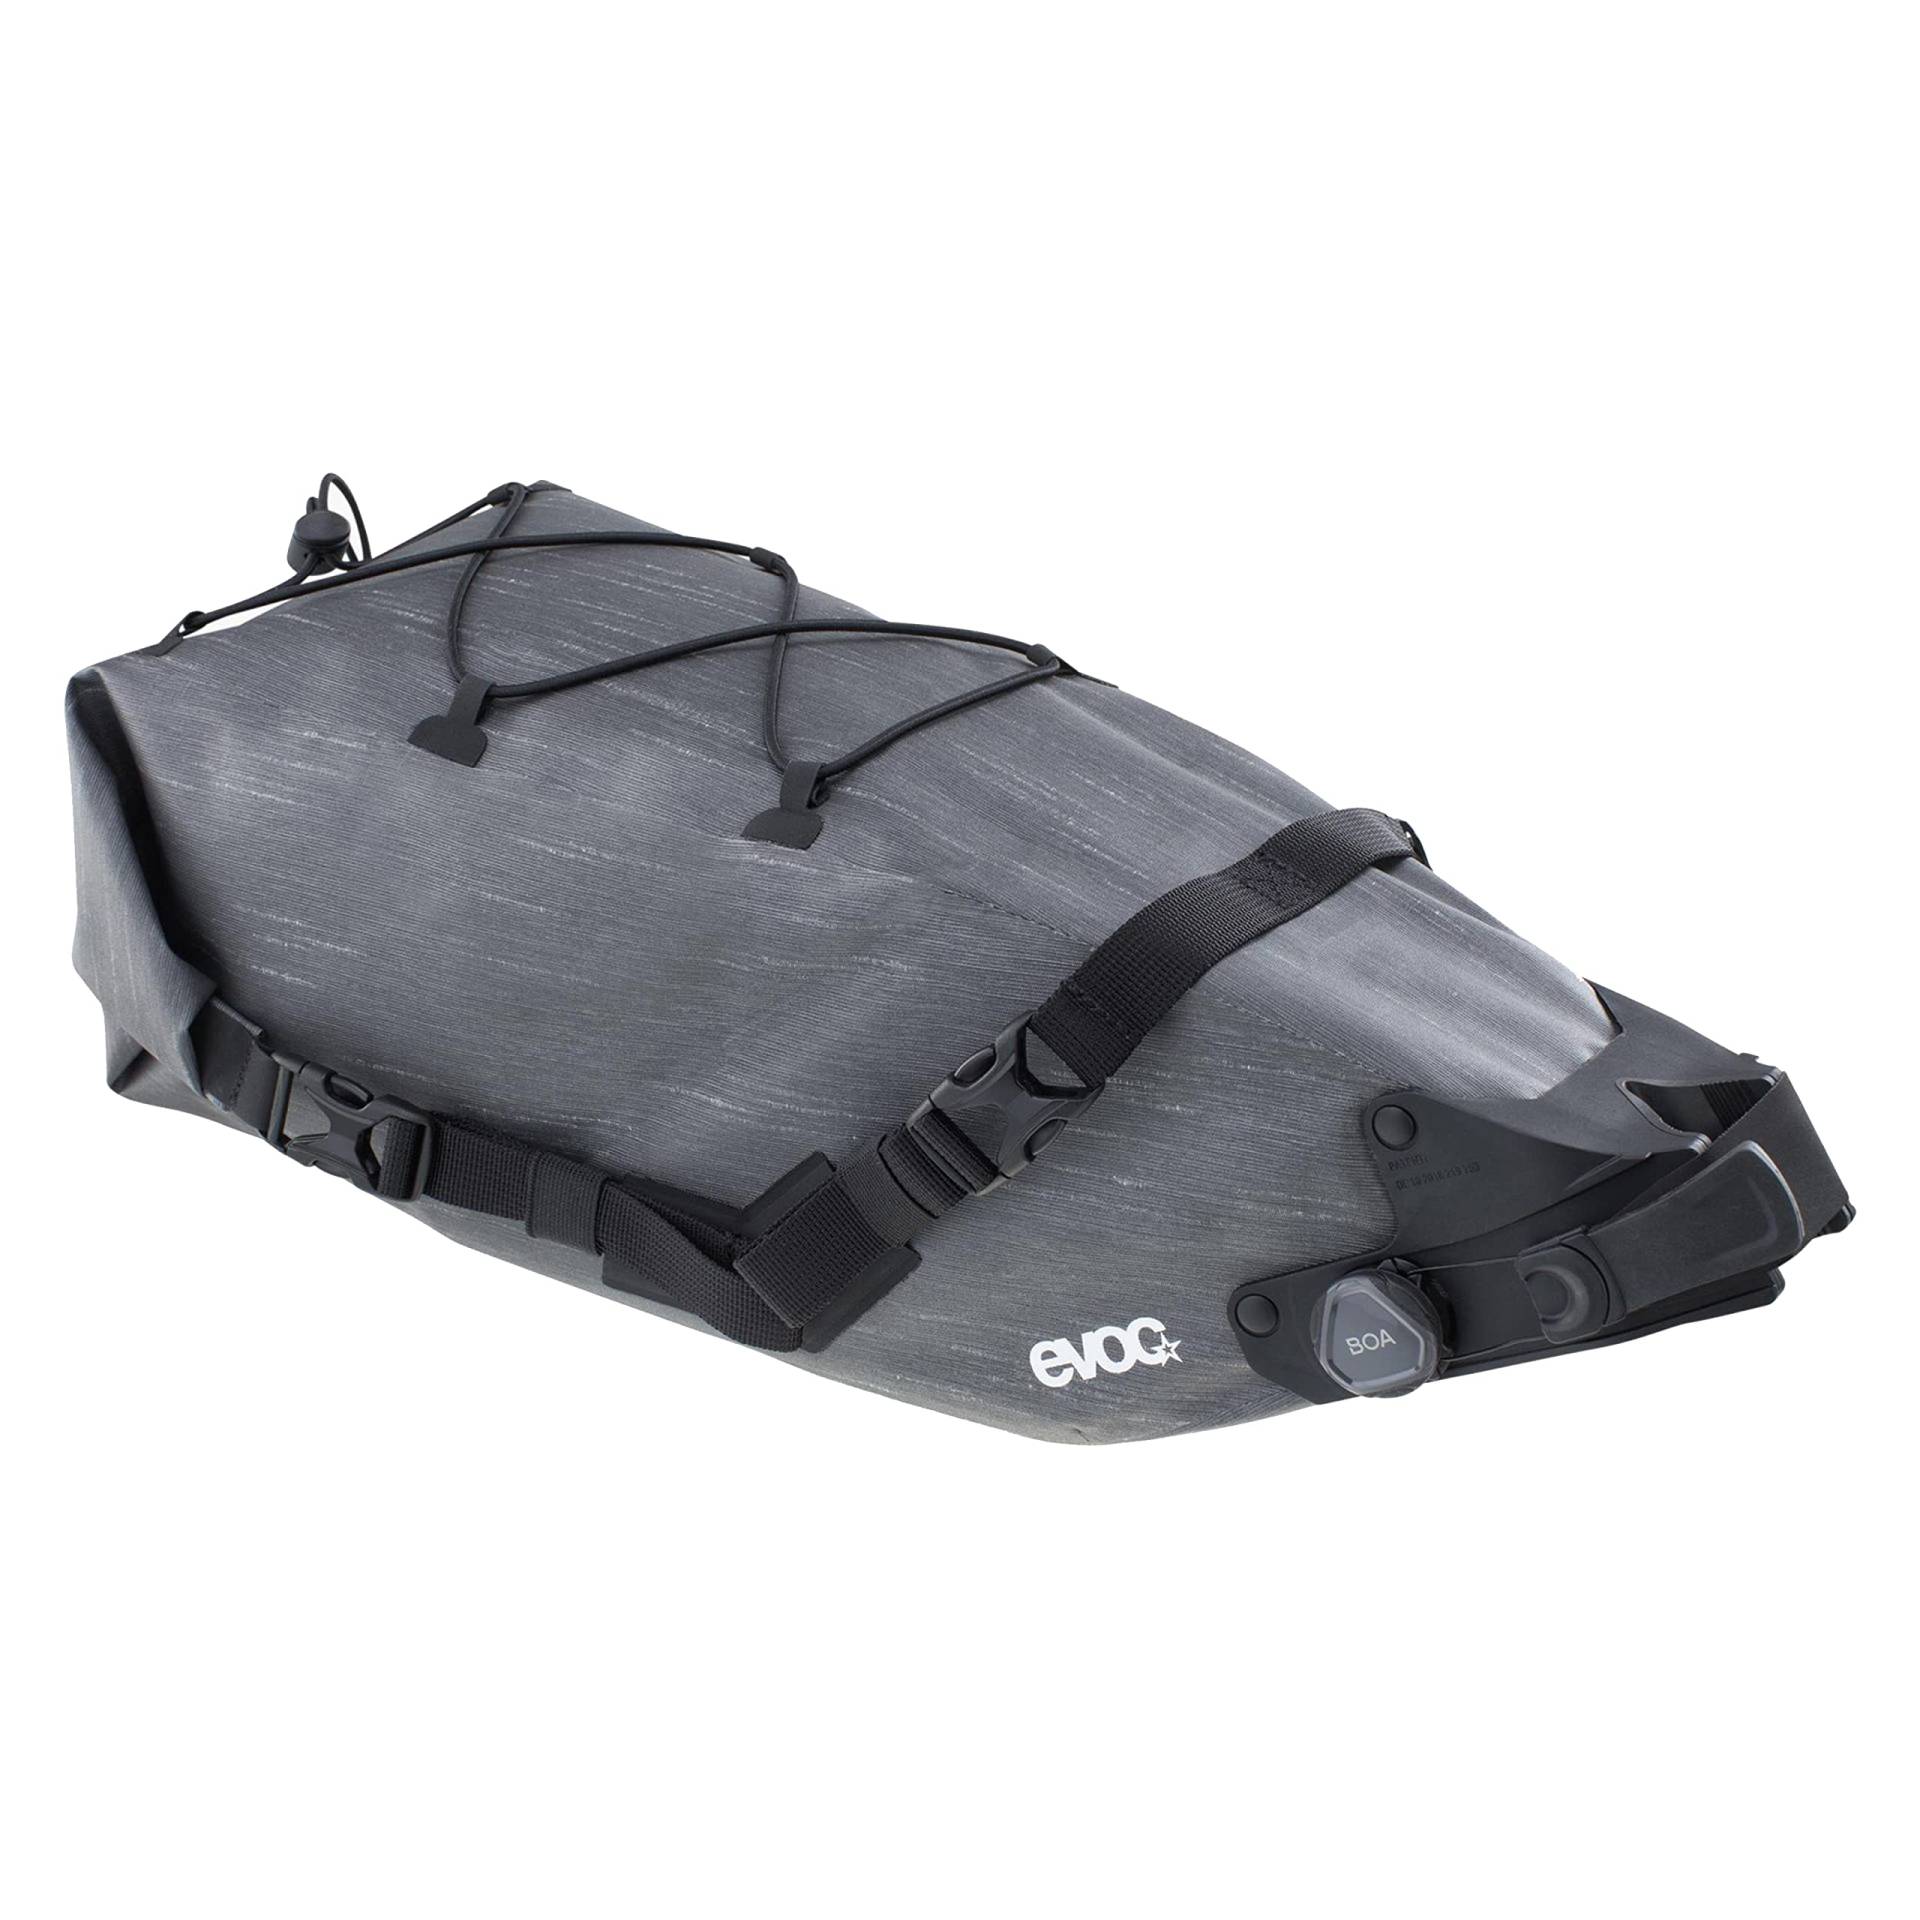 EVOC SEAT PACK BOA WP 8, praktische Satteltasche (wasserfeste Bikebag, leichtes Fahrradzubehör, Fahrrad Tasche hinten, Gewicht: 544 g, Maße: 45,7 x 19,1 x 19,1 cm, Volumen: 8 l), Carbon Grey von EVOC